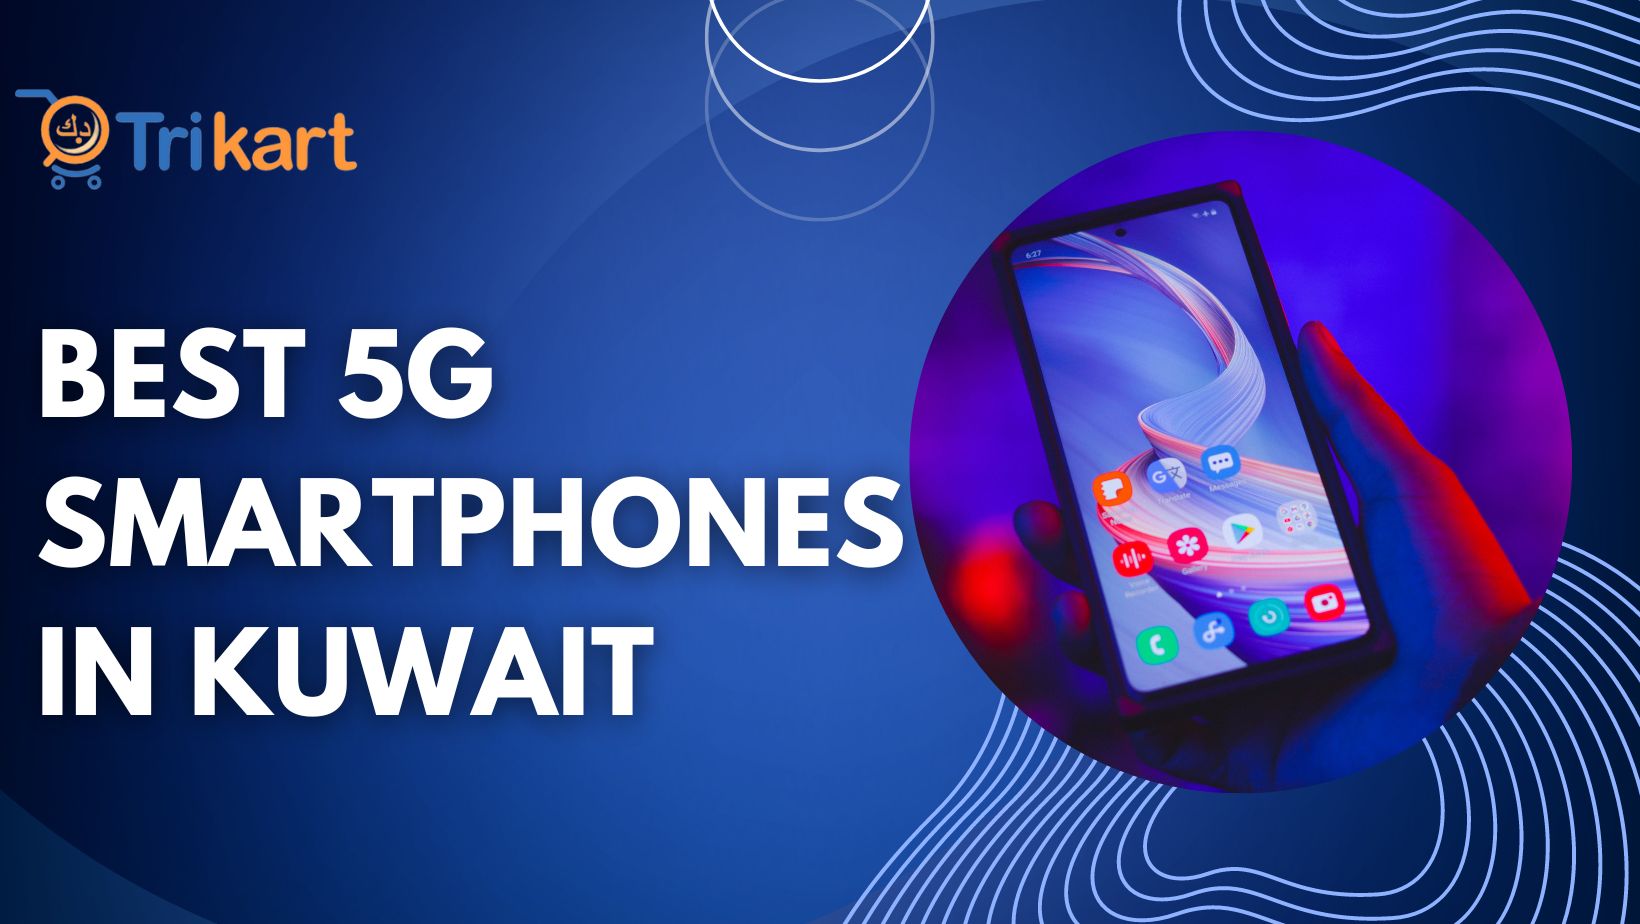 5G smartPhones In Kuwait